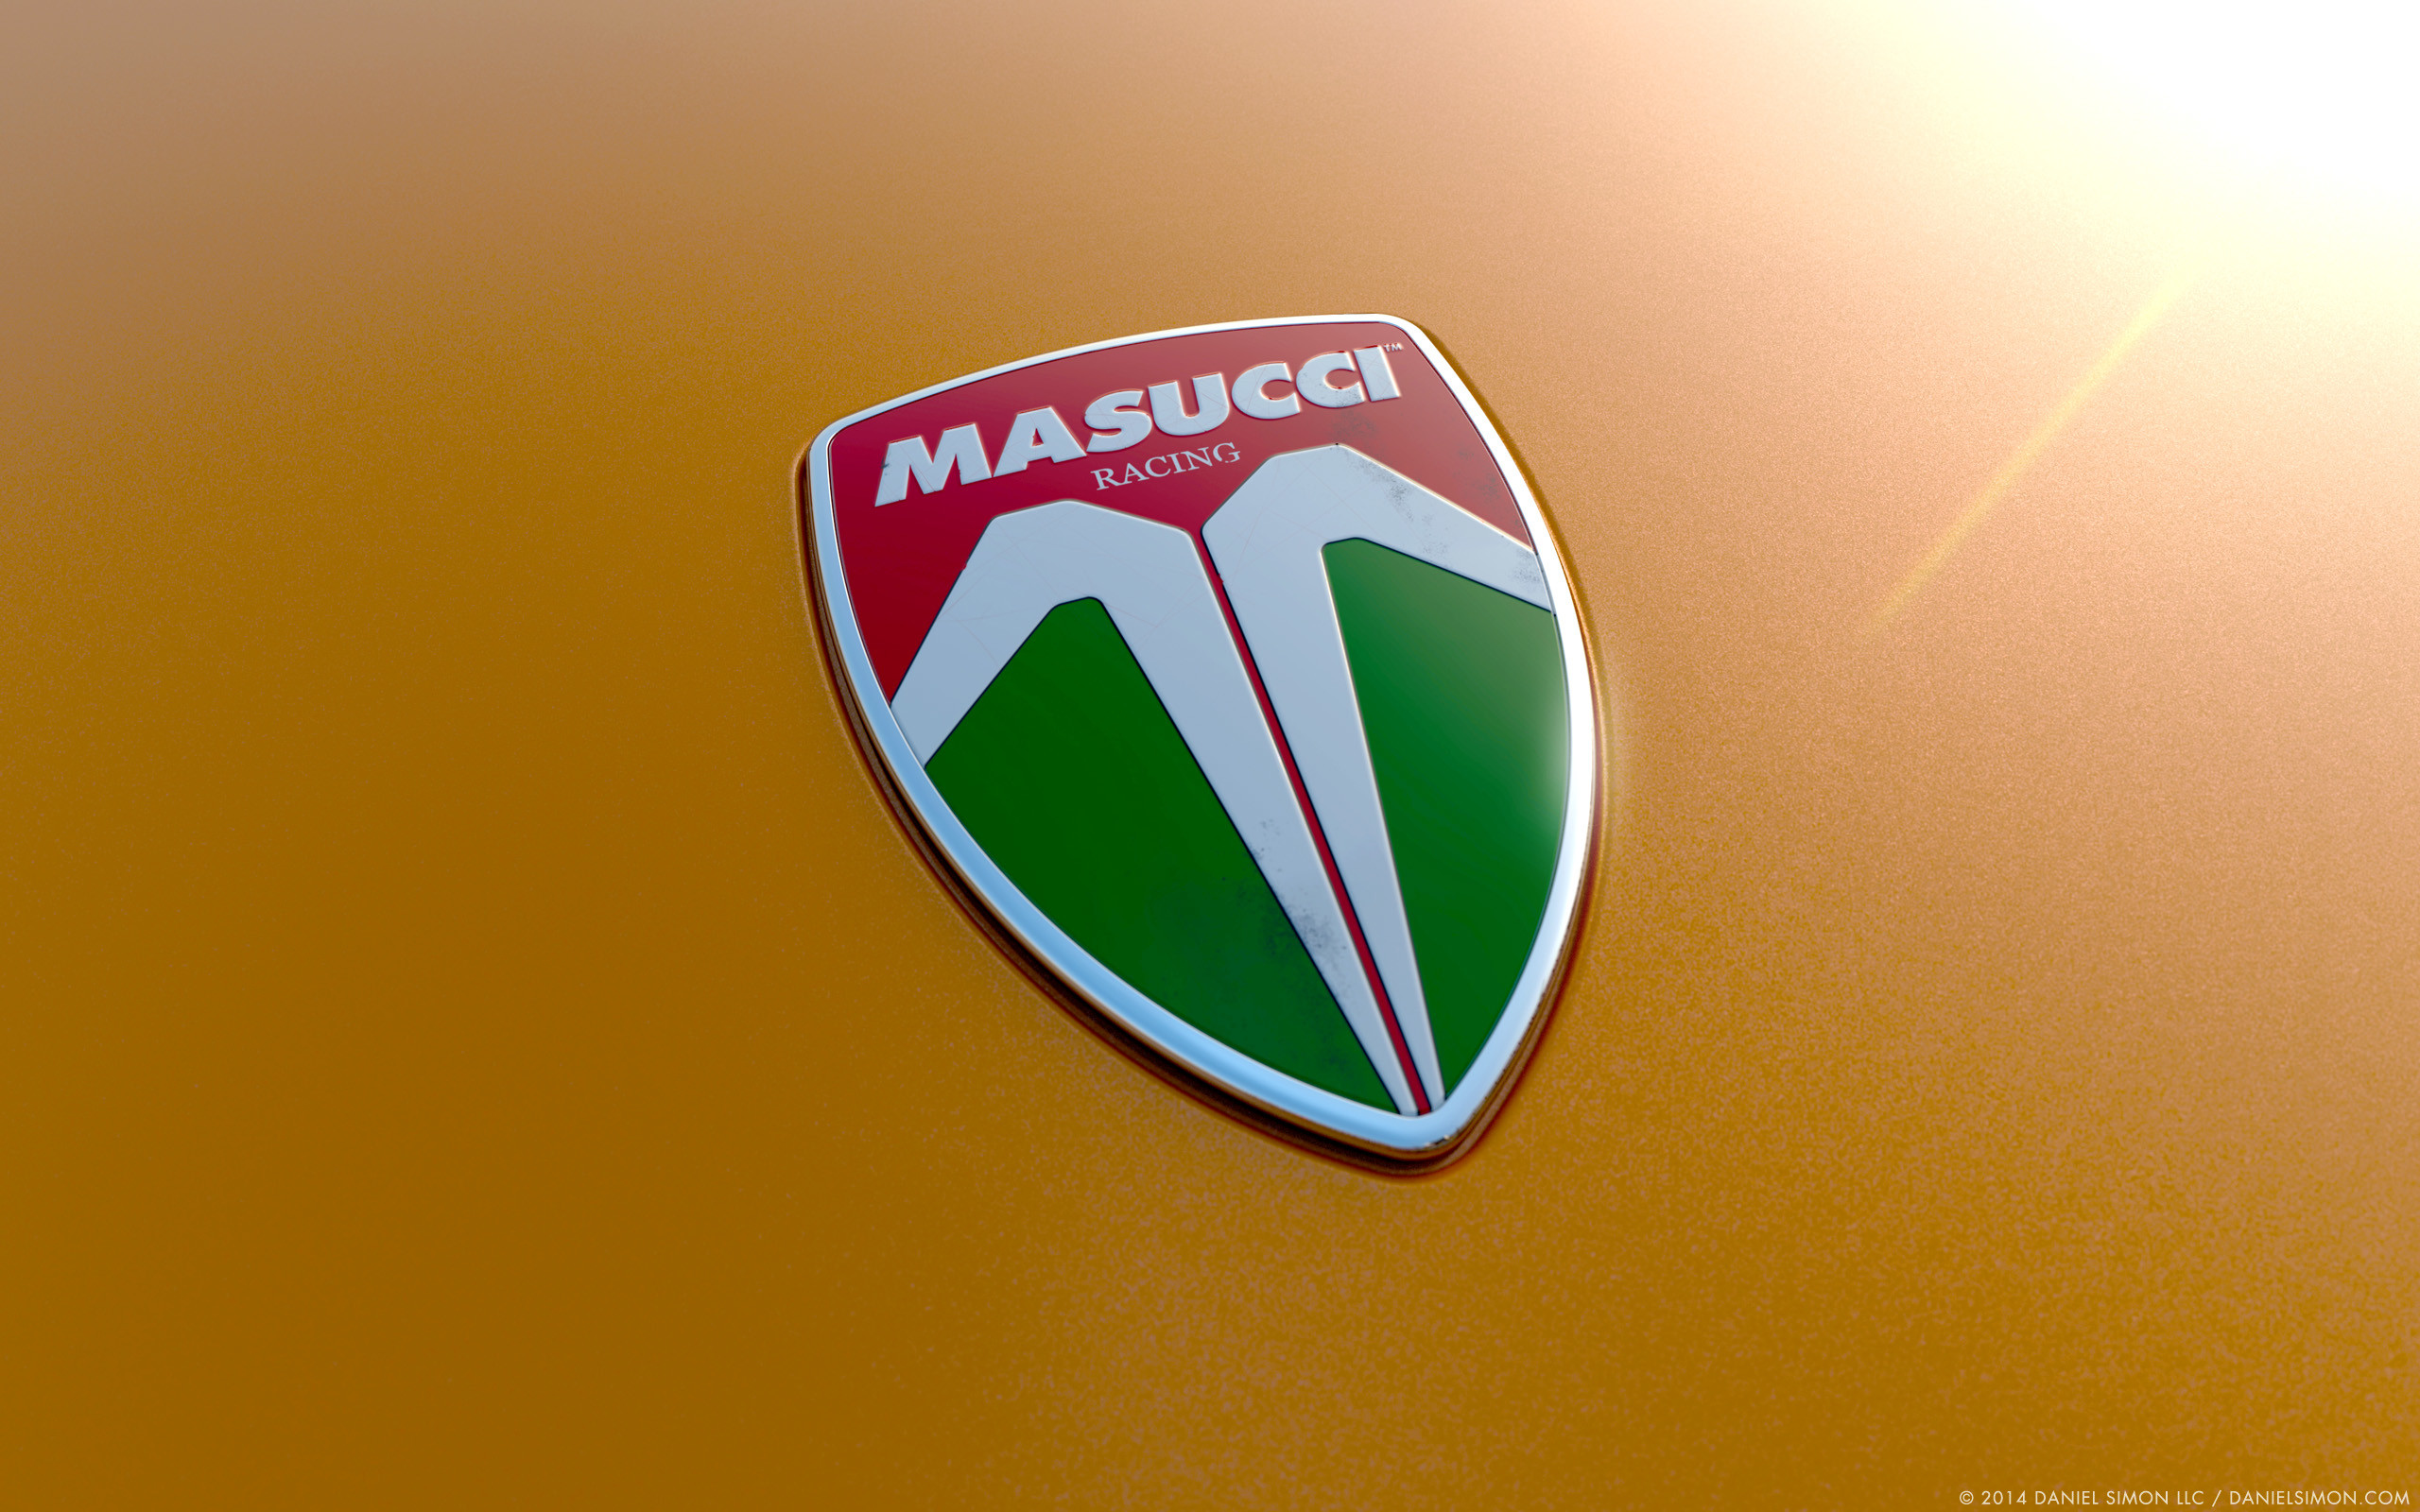 2560x1600 Wallpaper Masucci Badge